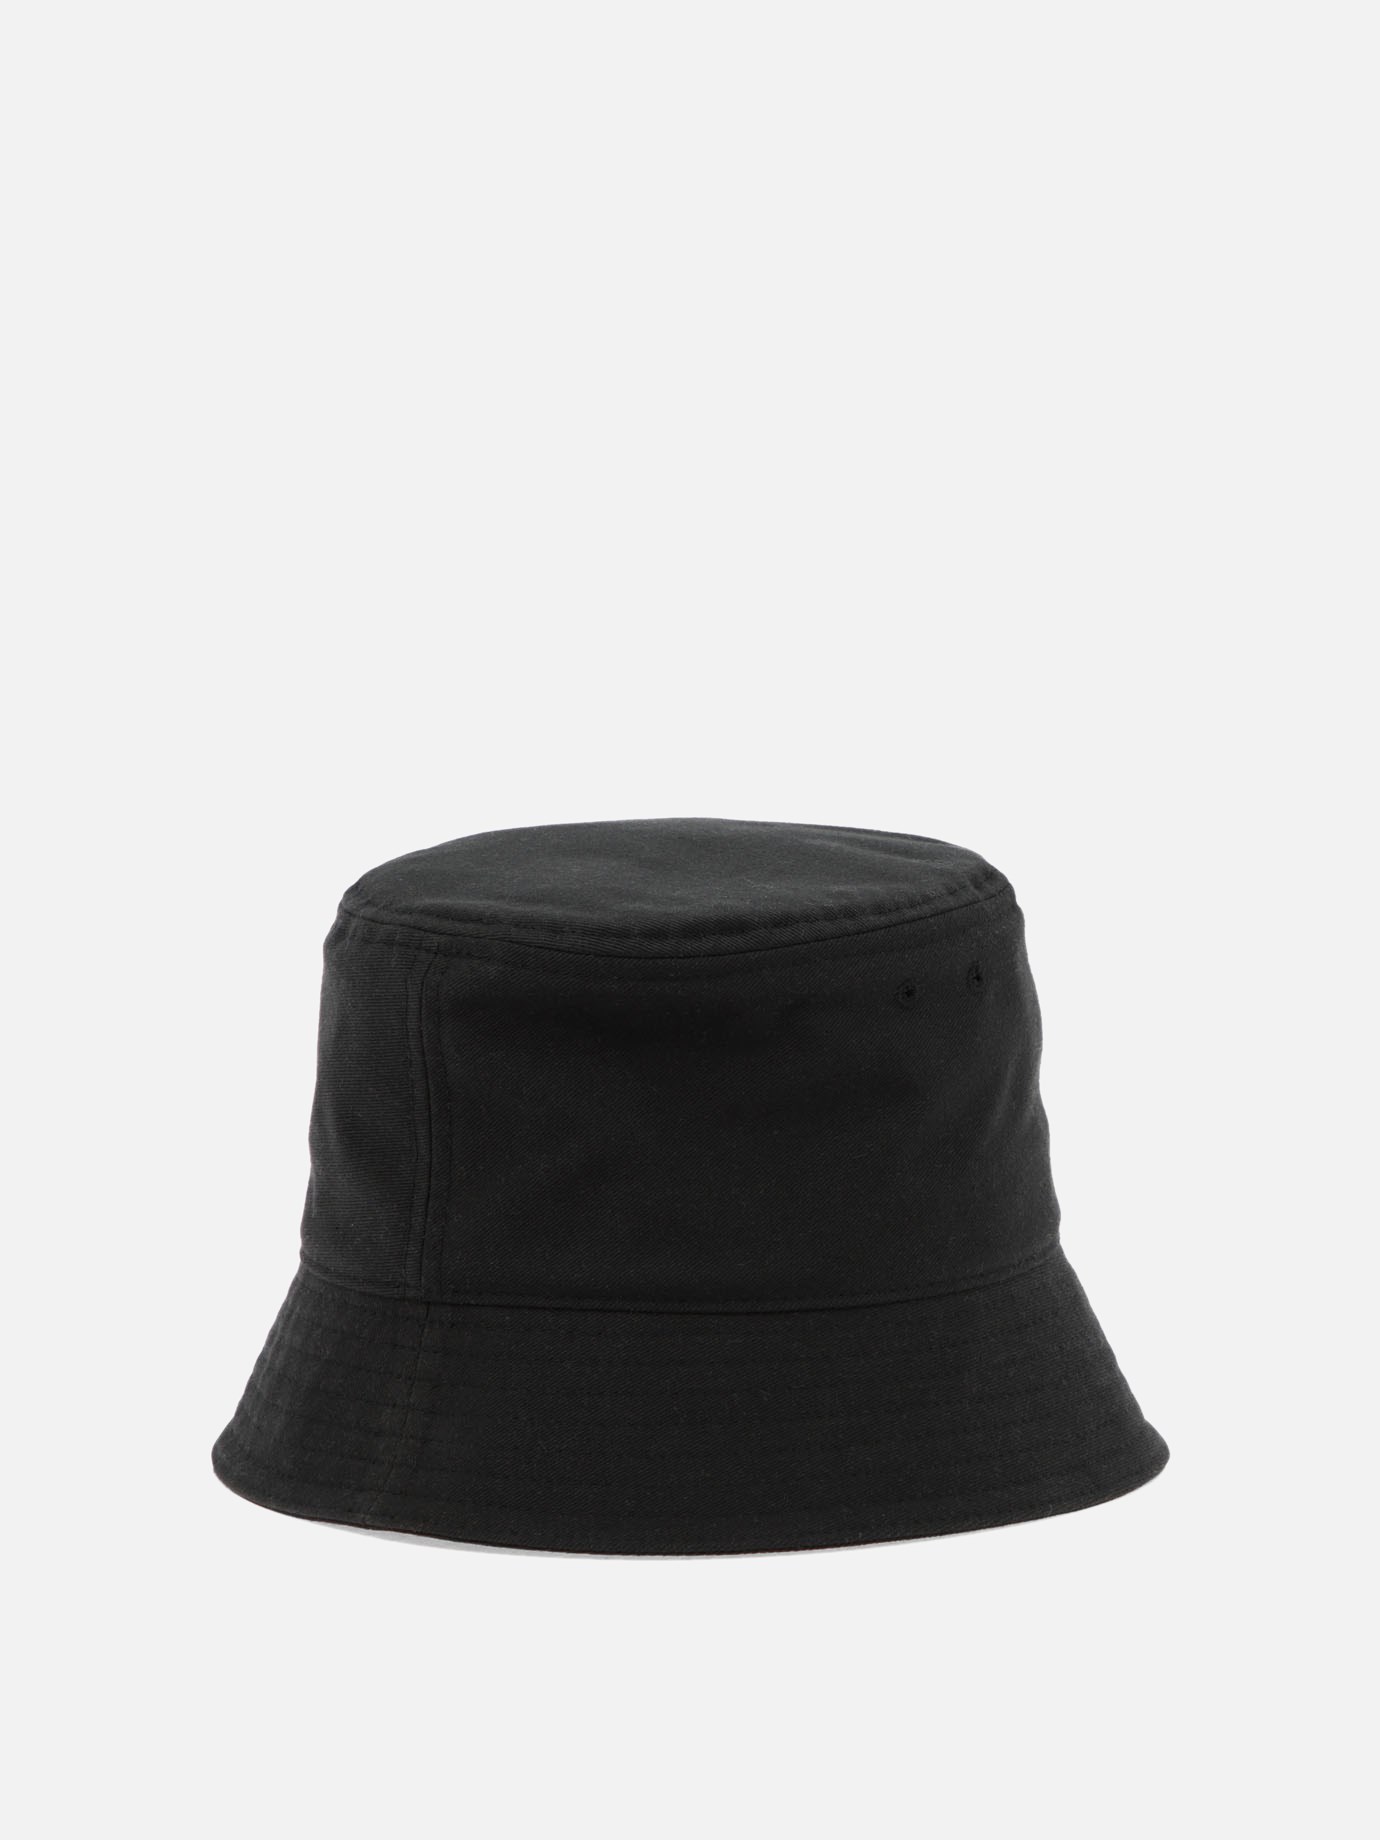  VLTN  bucket hat by Valentino Garavani